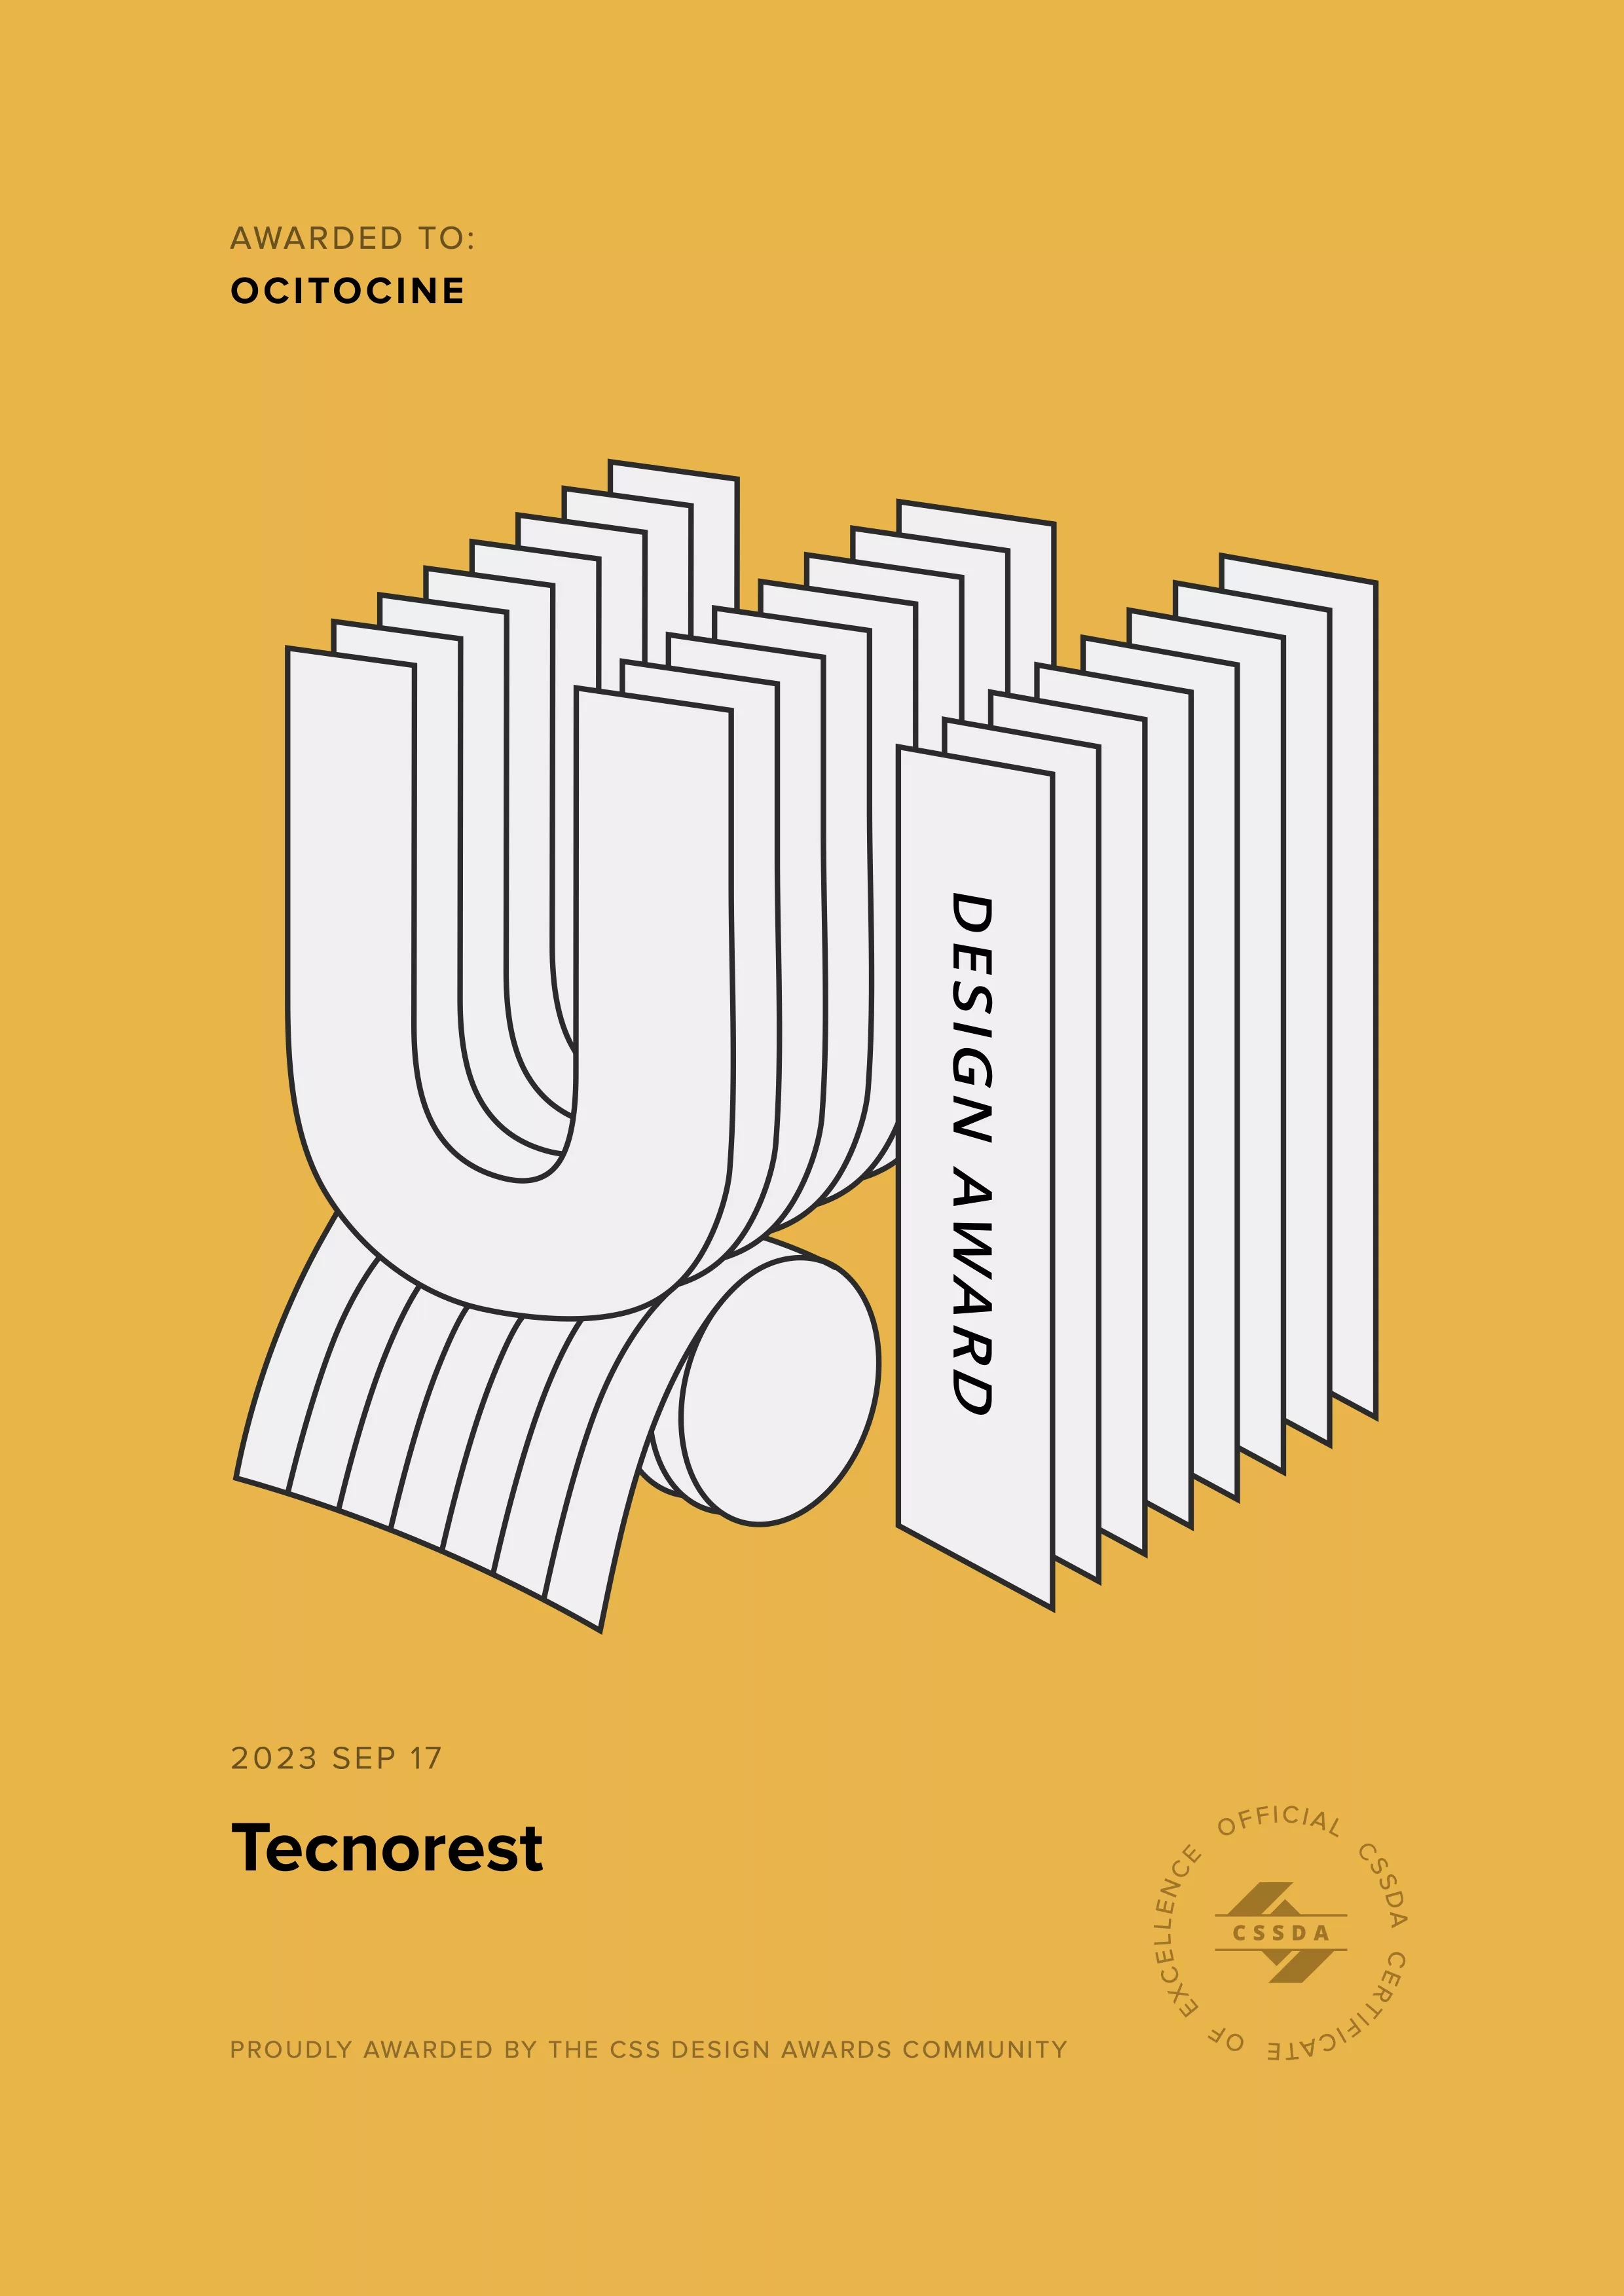 Ocitocine, agence créative web et branding, a remporté un prix "CSSDA UI Design Award" pour la réalisation du site web tecnorest.fr